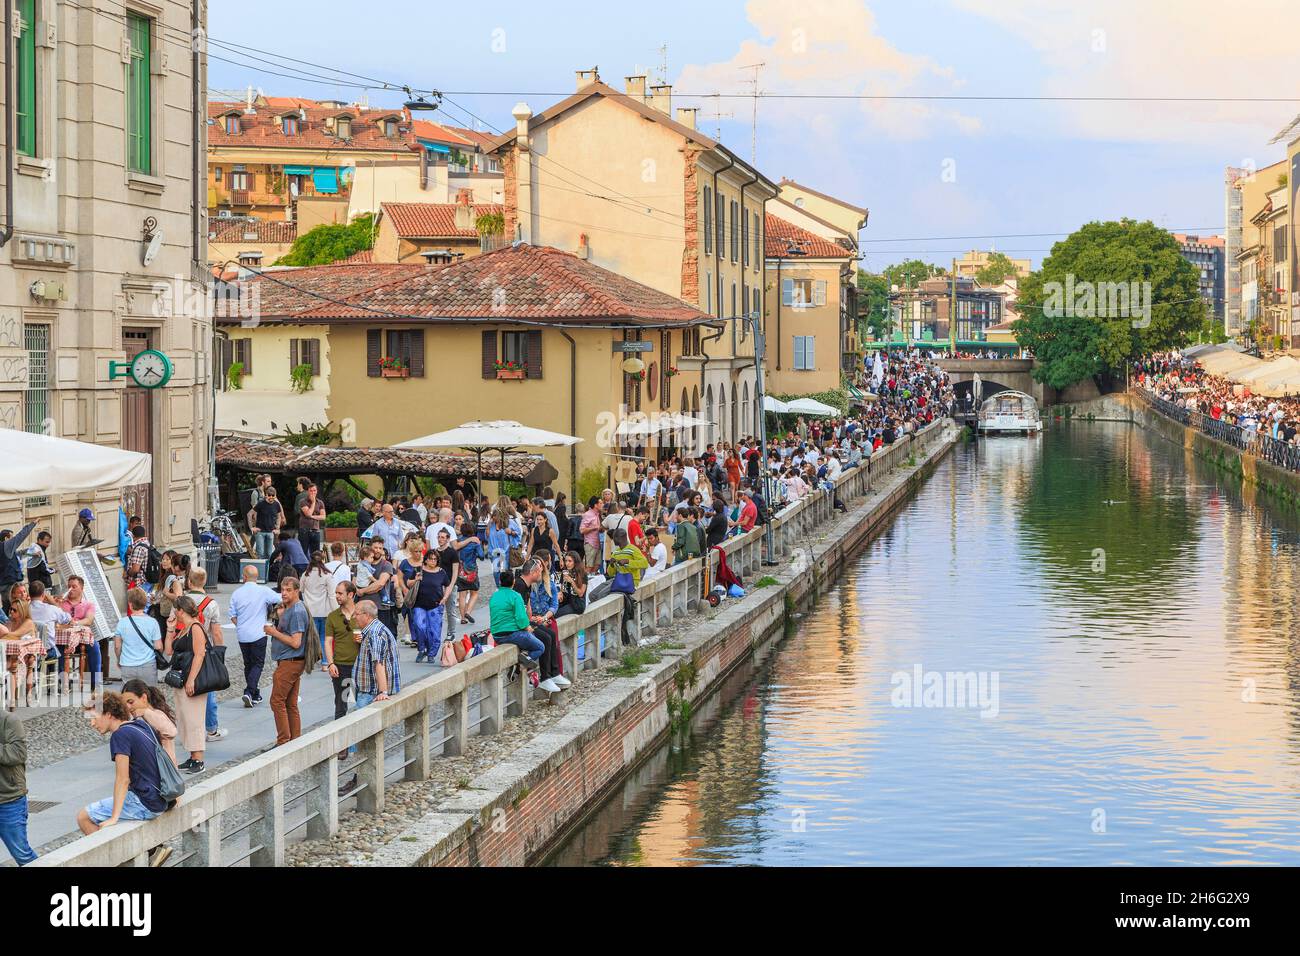 MAILAND, ITALIEN - 12. MAI 2018: Dies ist der Damm des alten Canale Grande des Navigli-Viertels, des romantischsten und lebendigsten Viertels der Stadt. Stockfoto